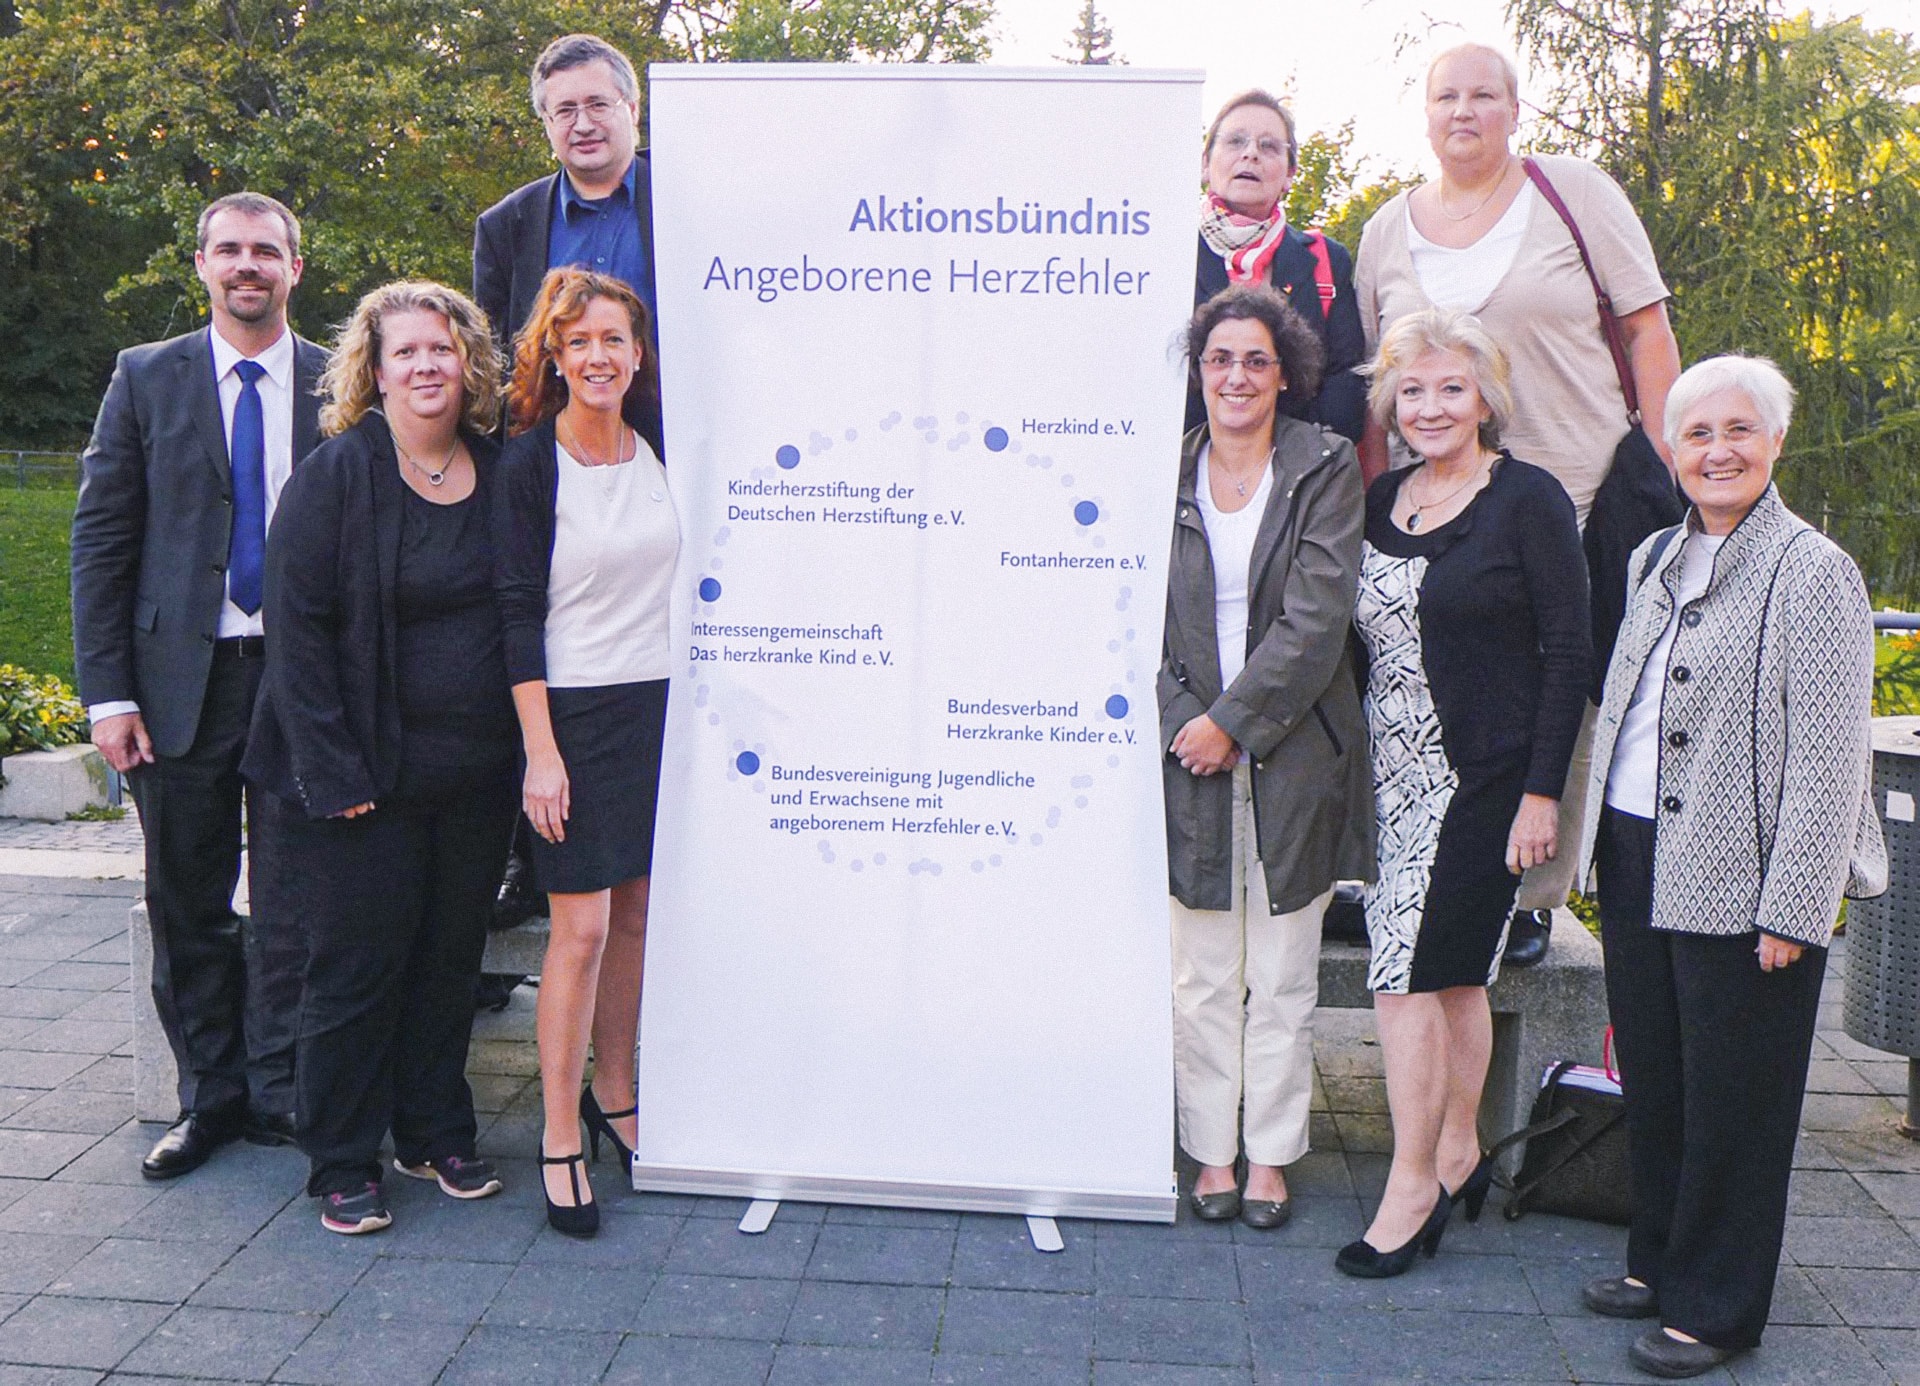 ABAHF - Die Gründung in Weimar 2014